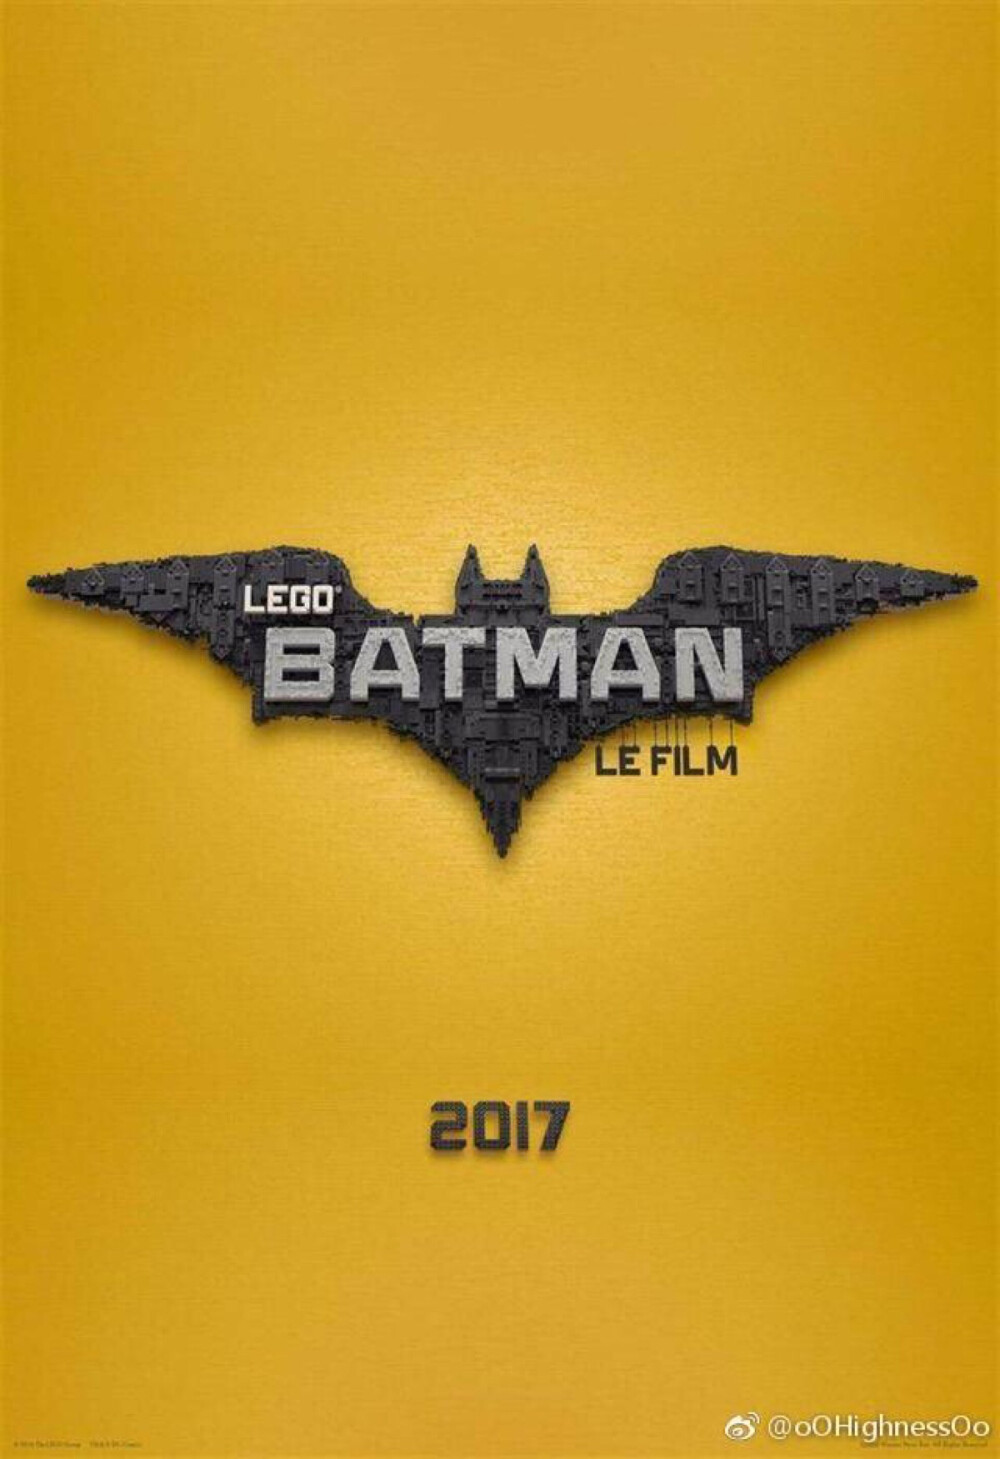  LEGO Batman Movie